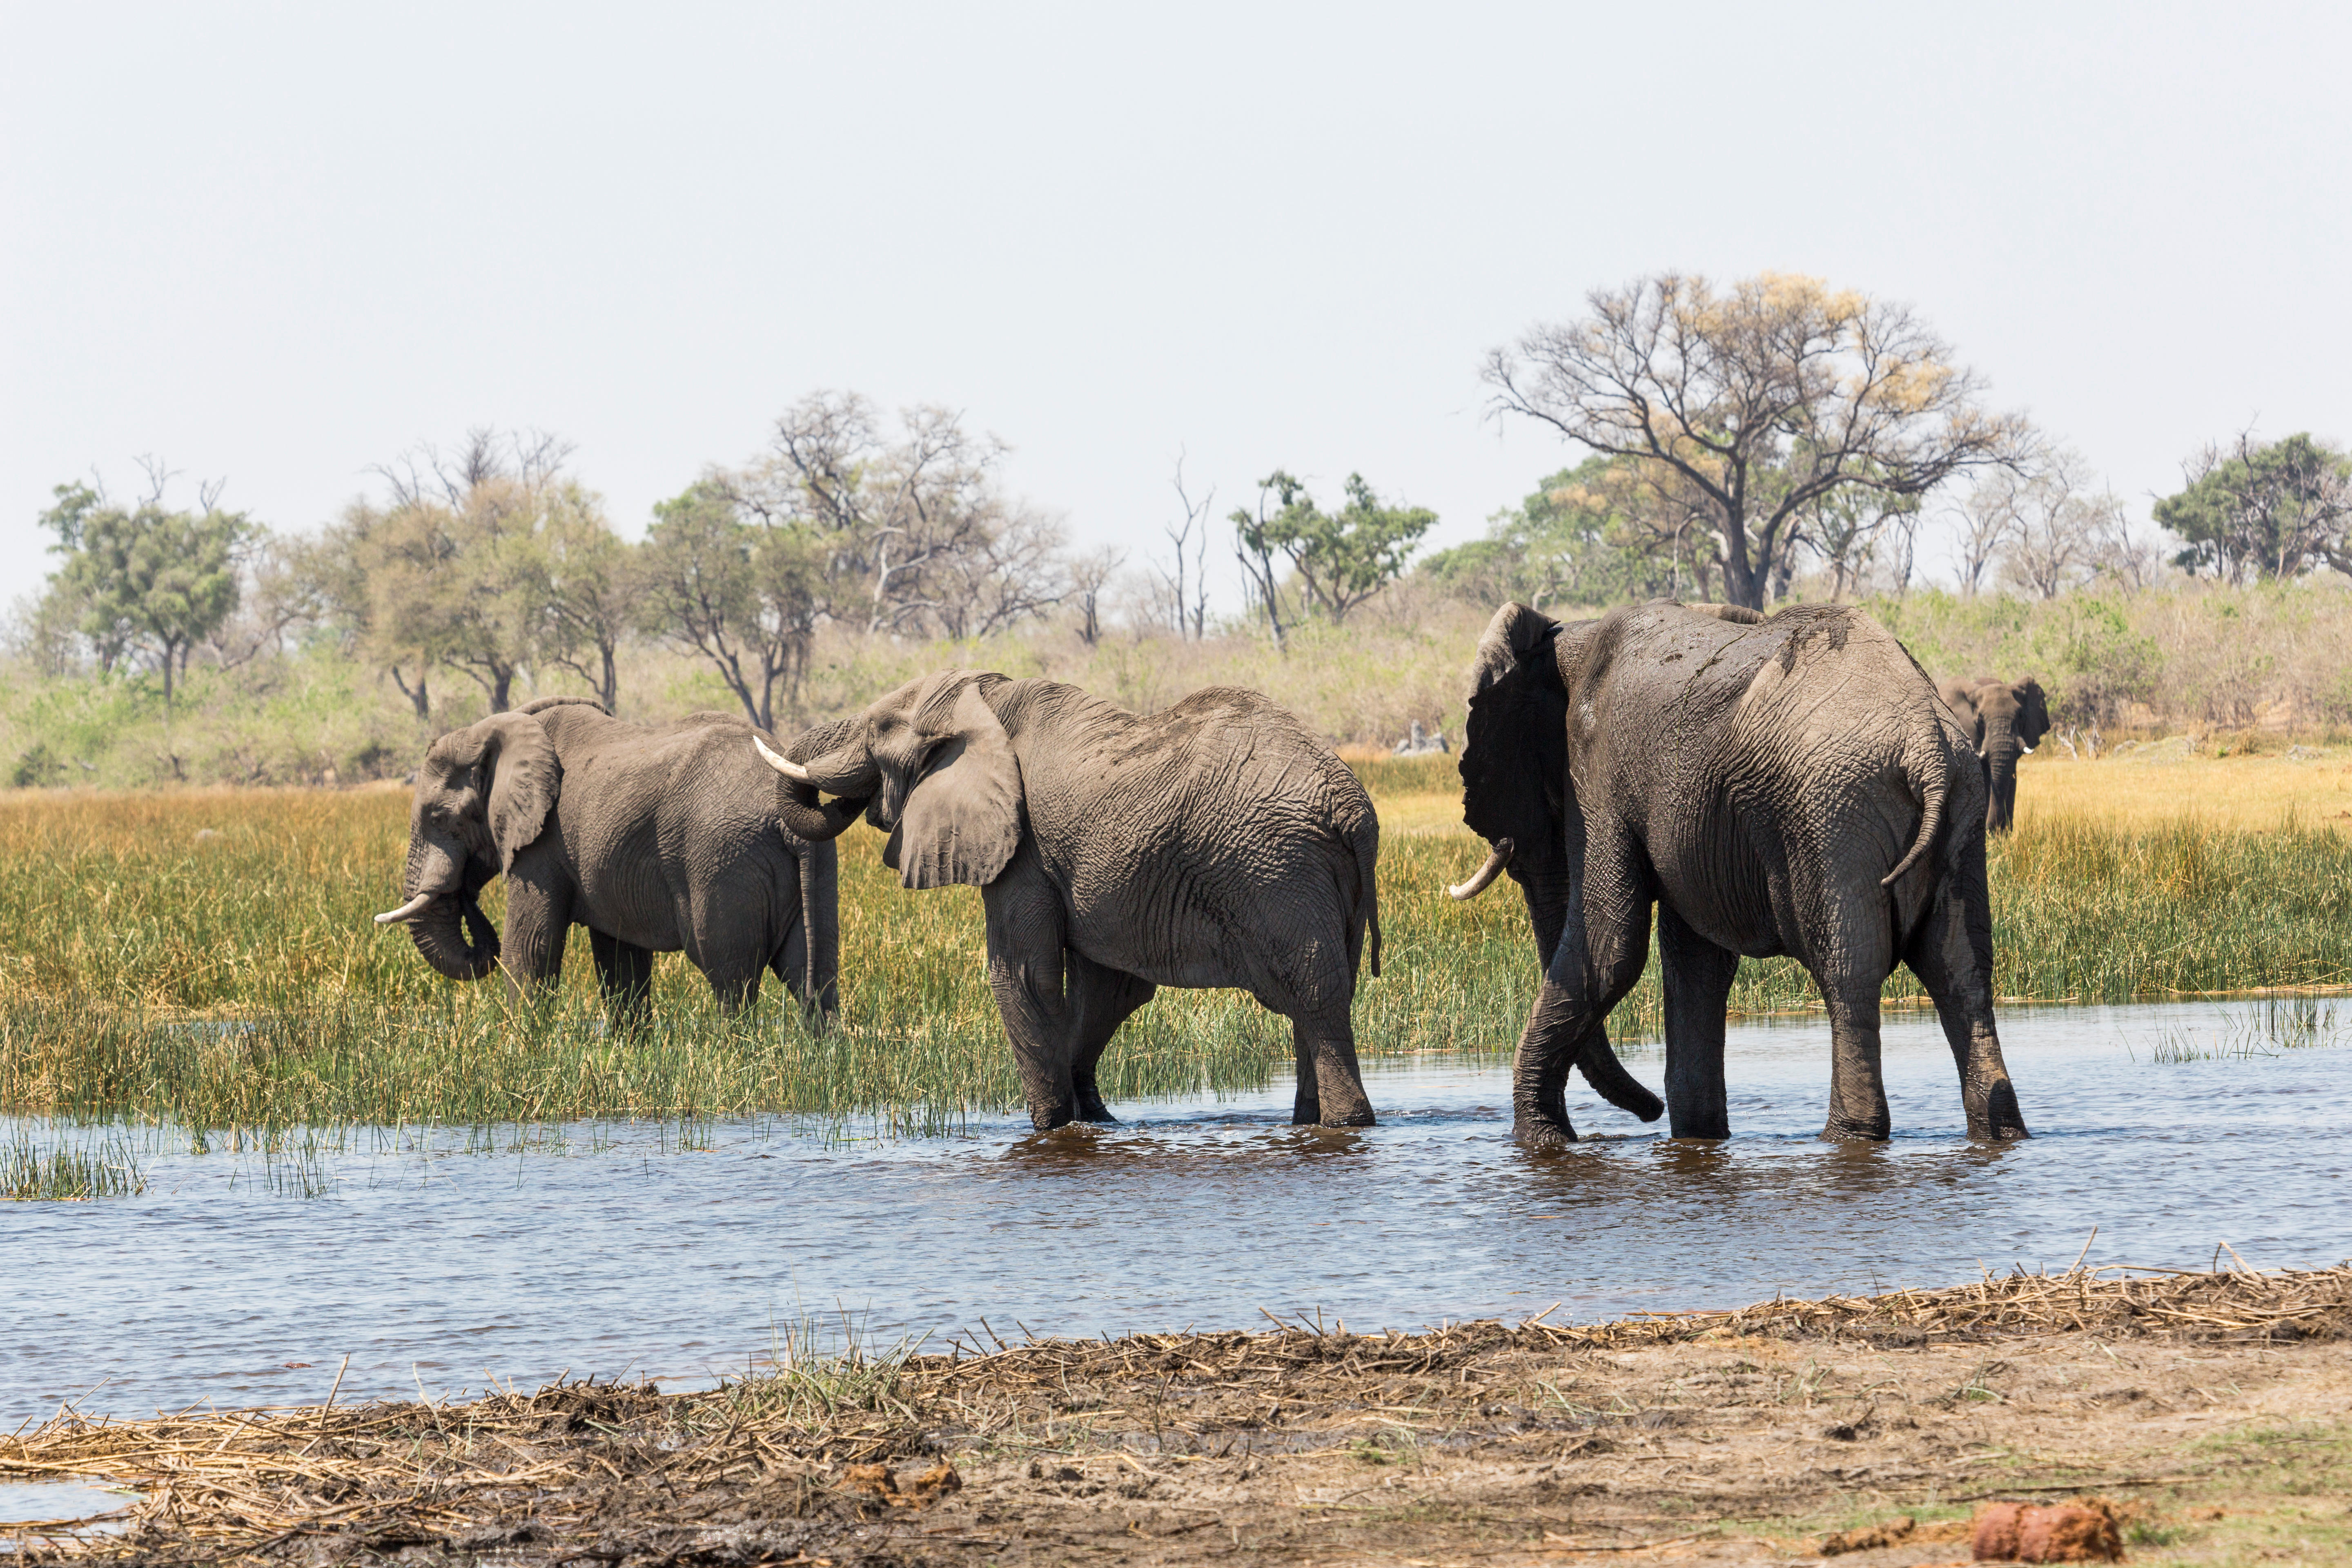 Elephants walking in water